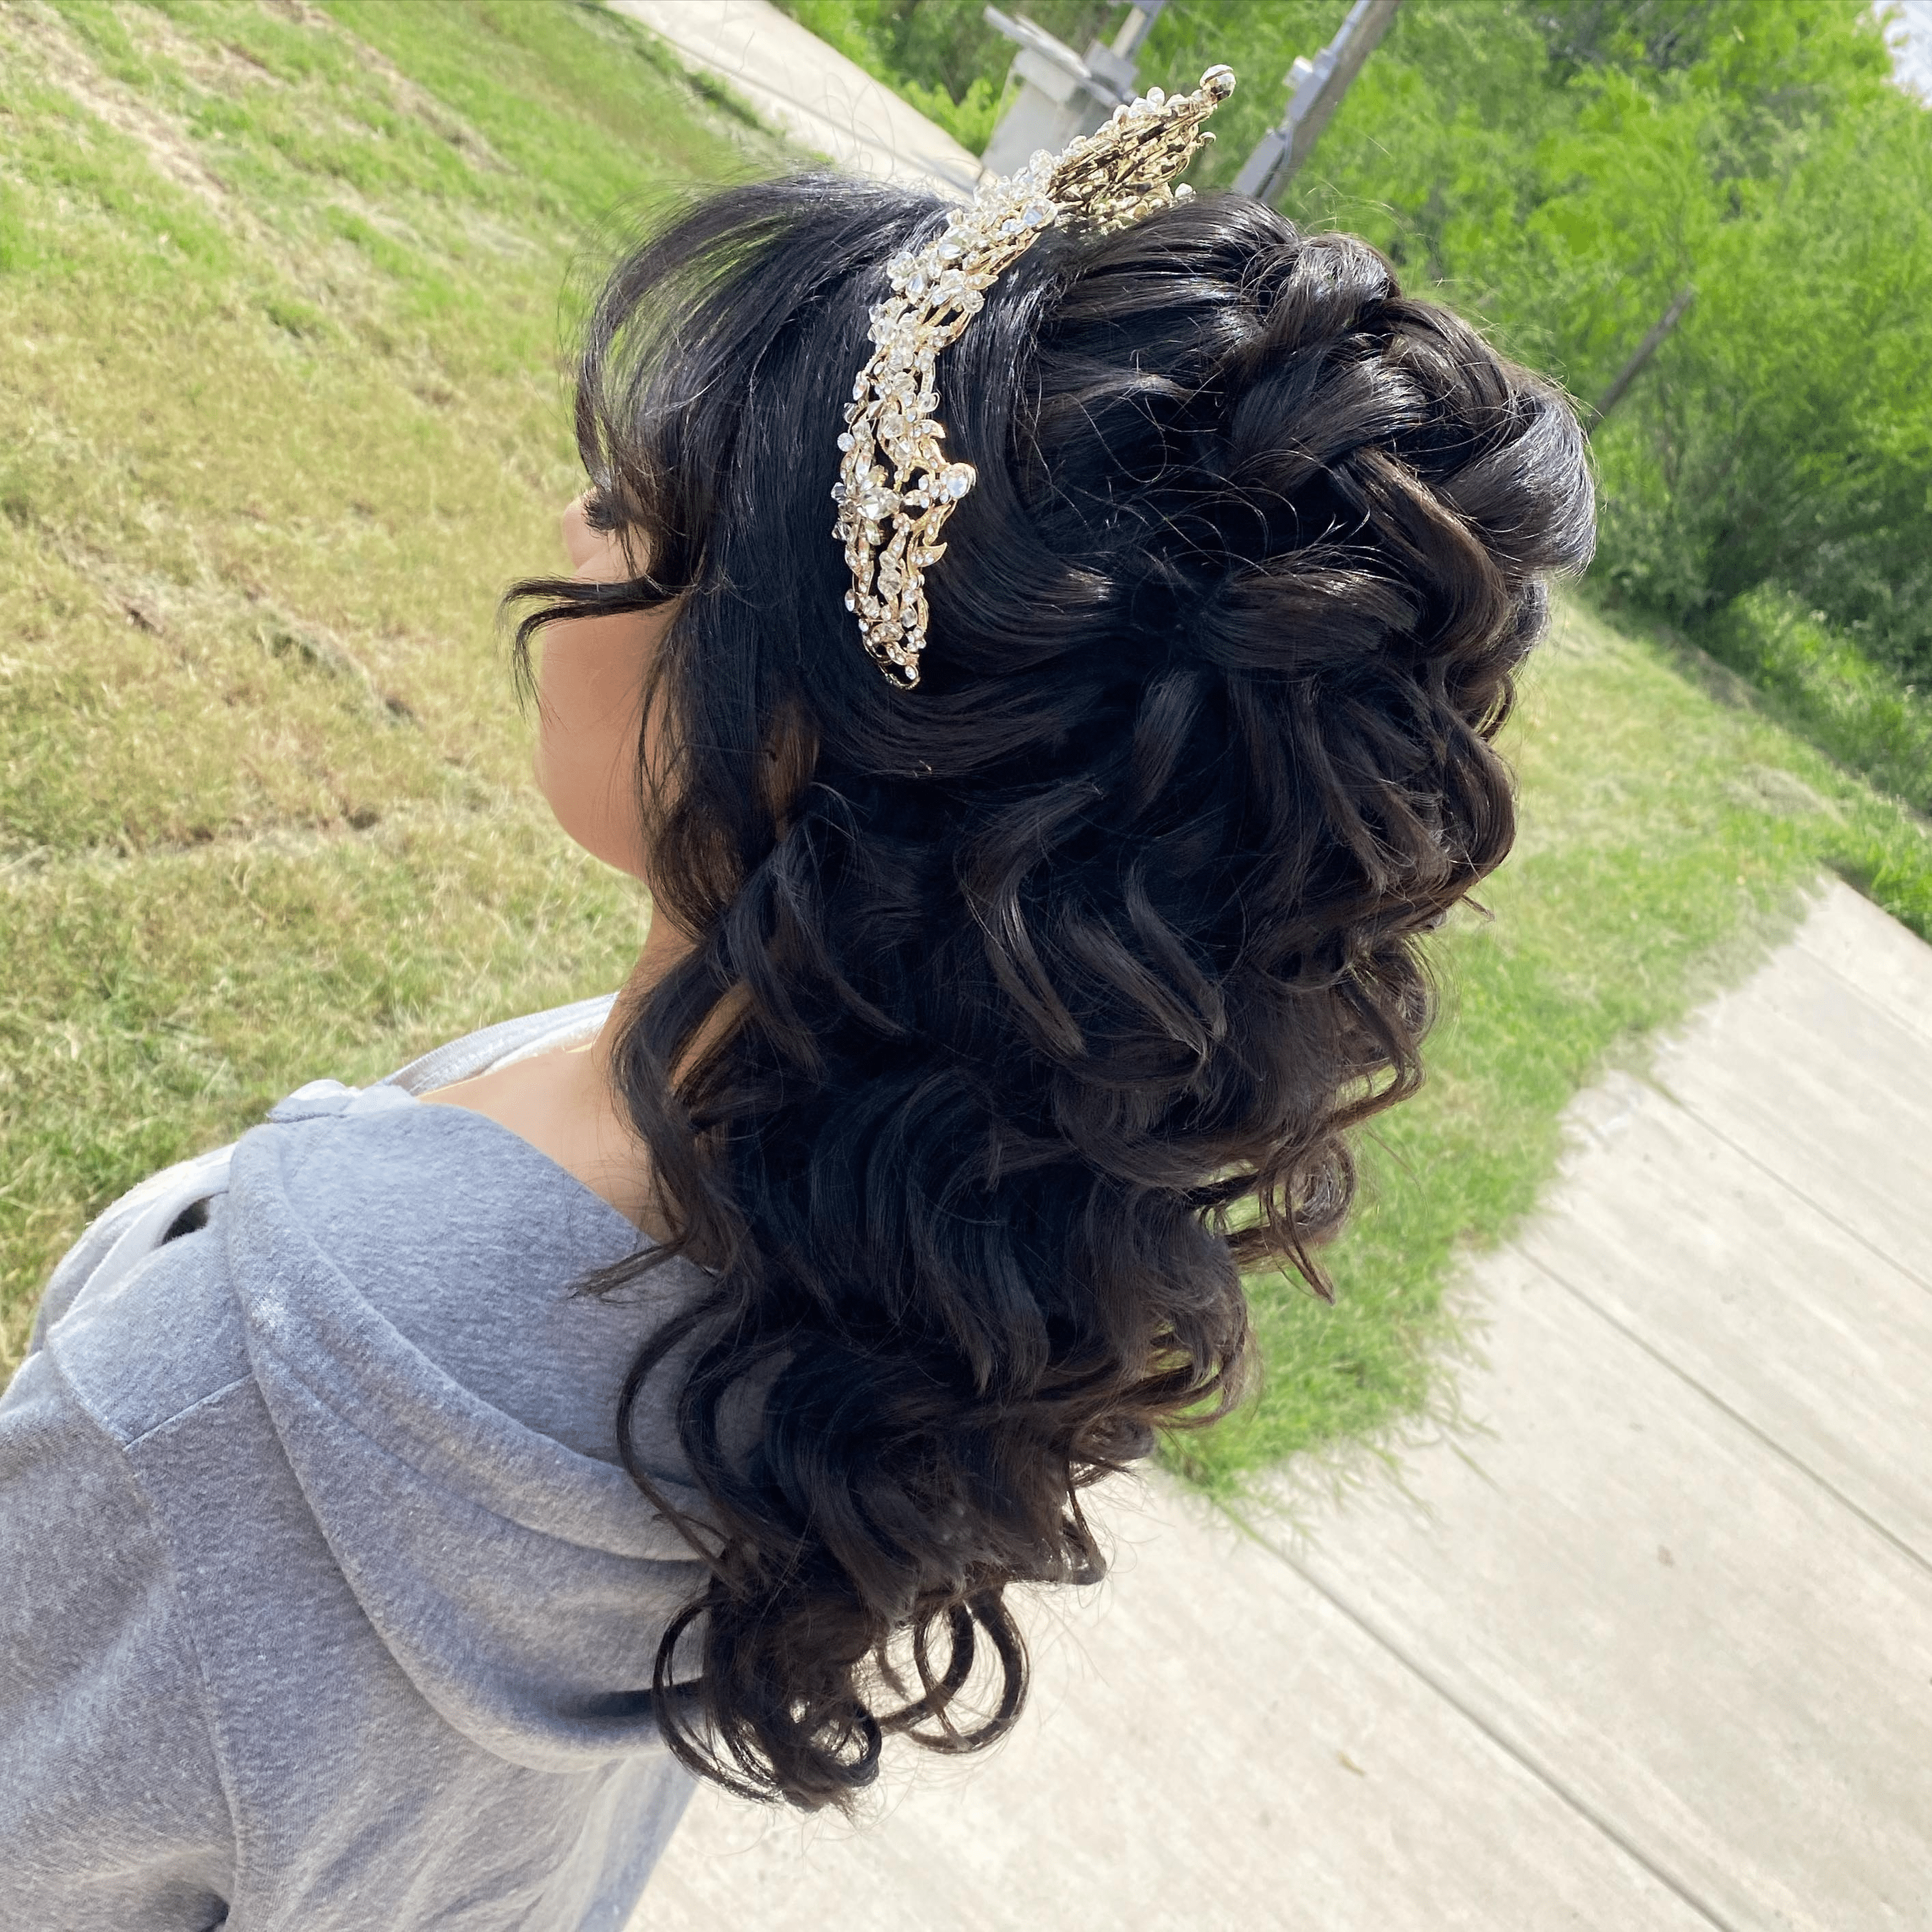 Enchanted Crown of Curls